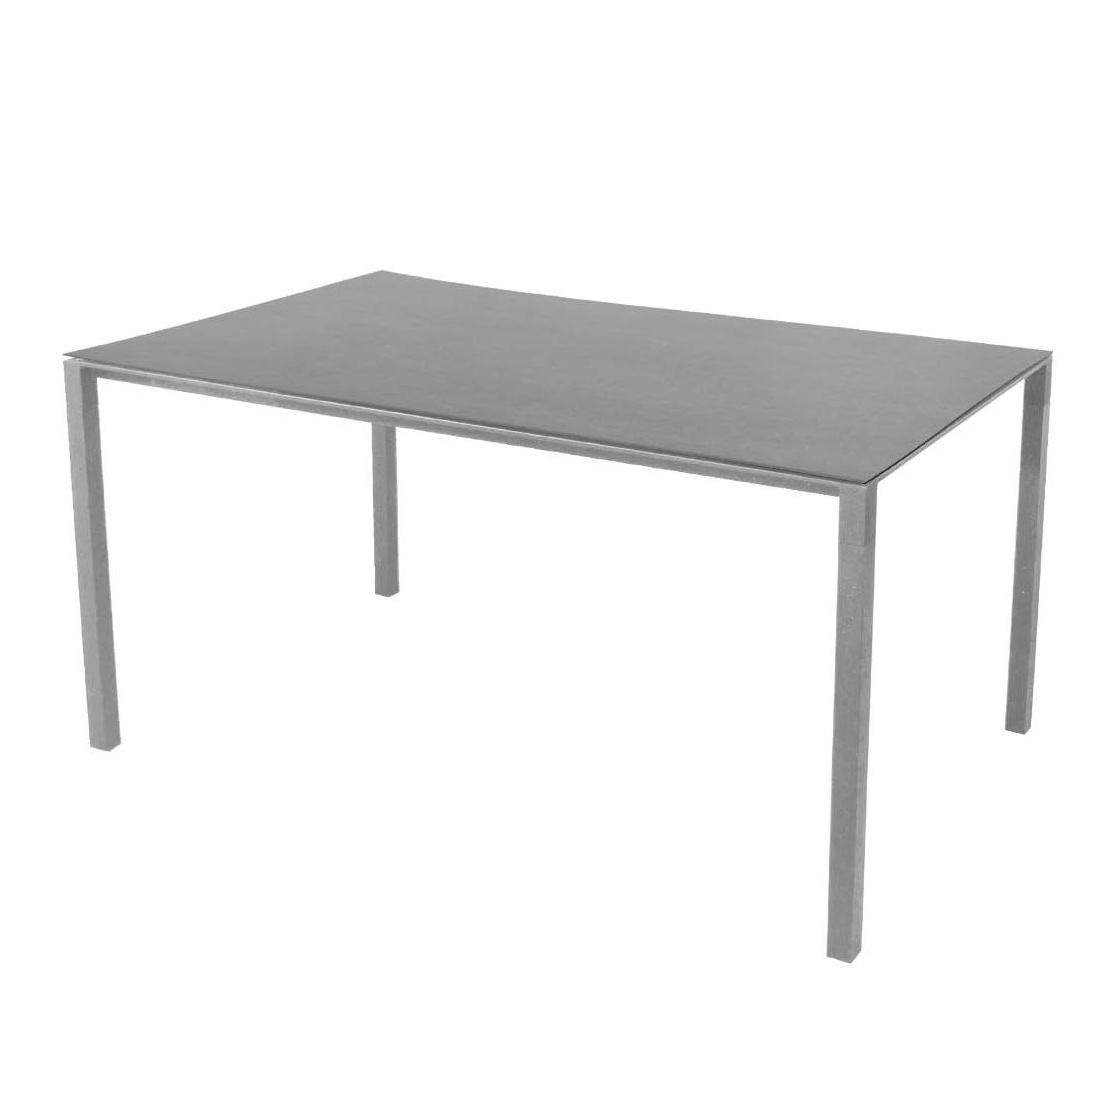 Cane-Line - Pure Gartentisch 150x90cm - basalt grau/Tischplatte Keramik/Gestell Aluminium hellgrau/LxBxH 150x90x73cm von Cane-Line